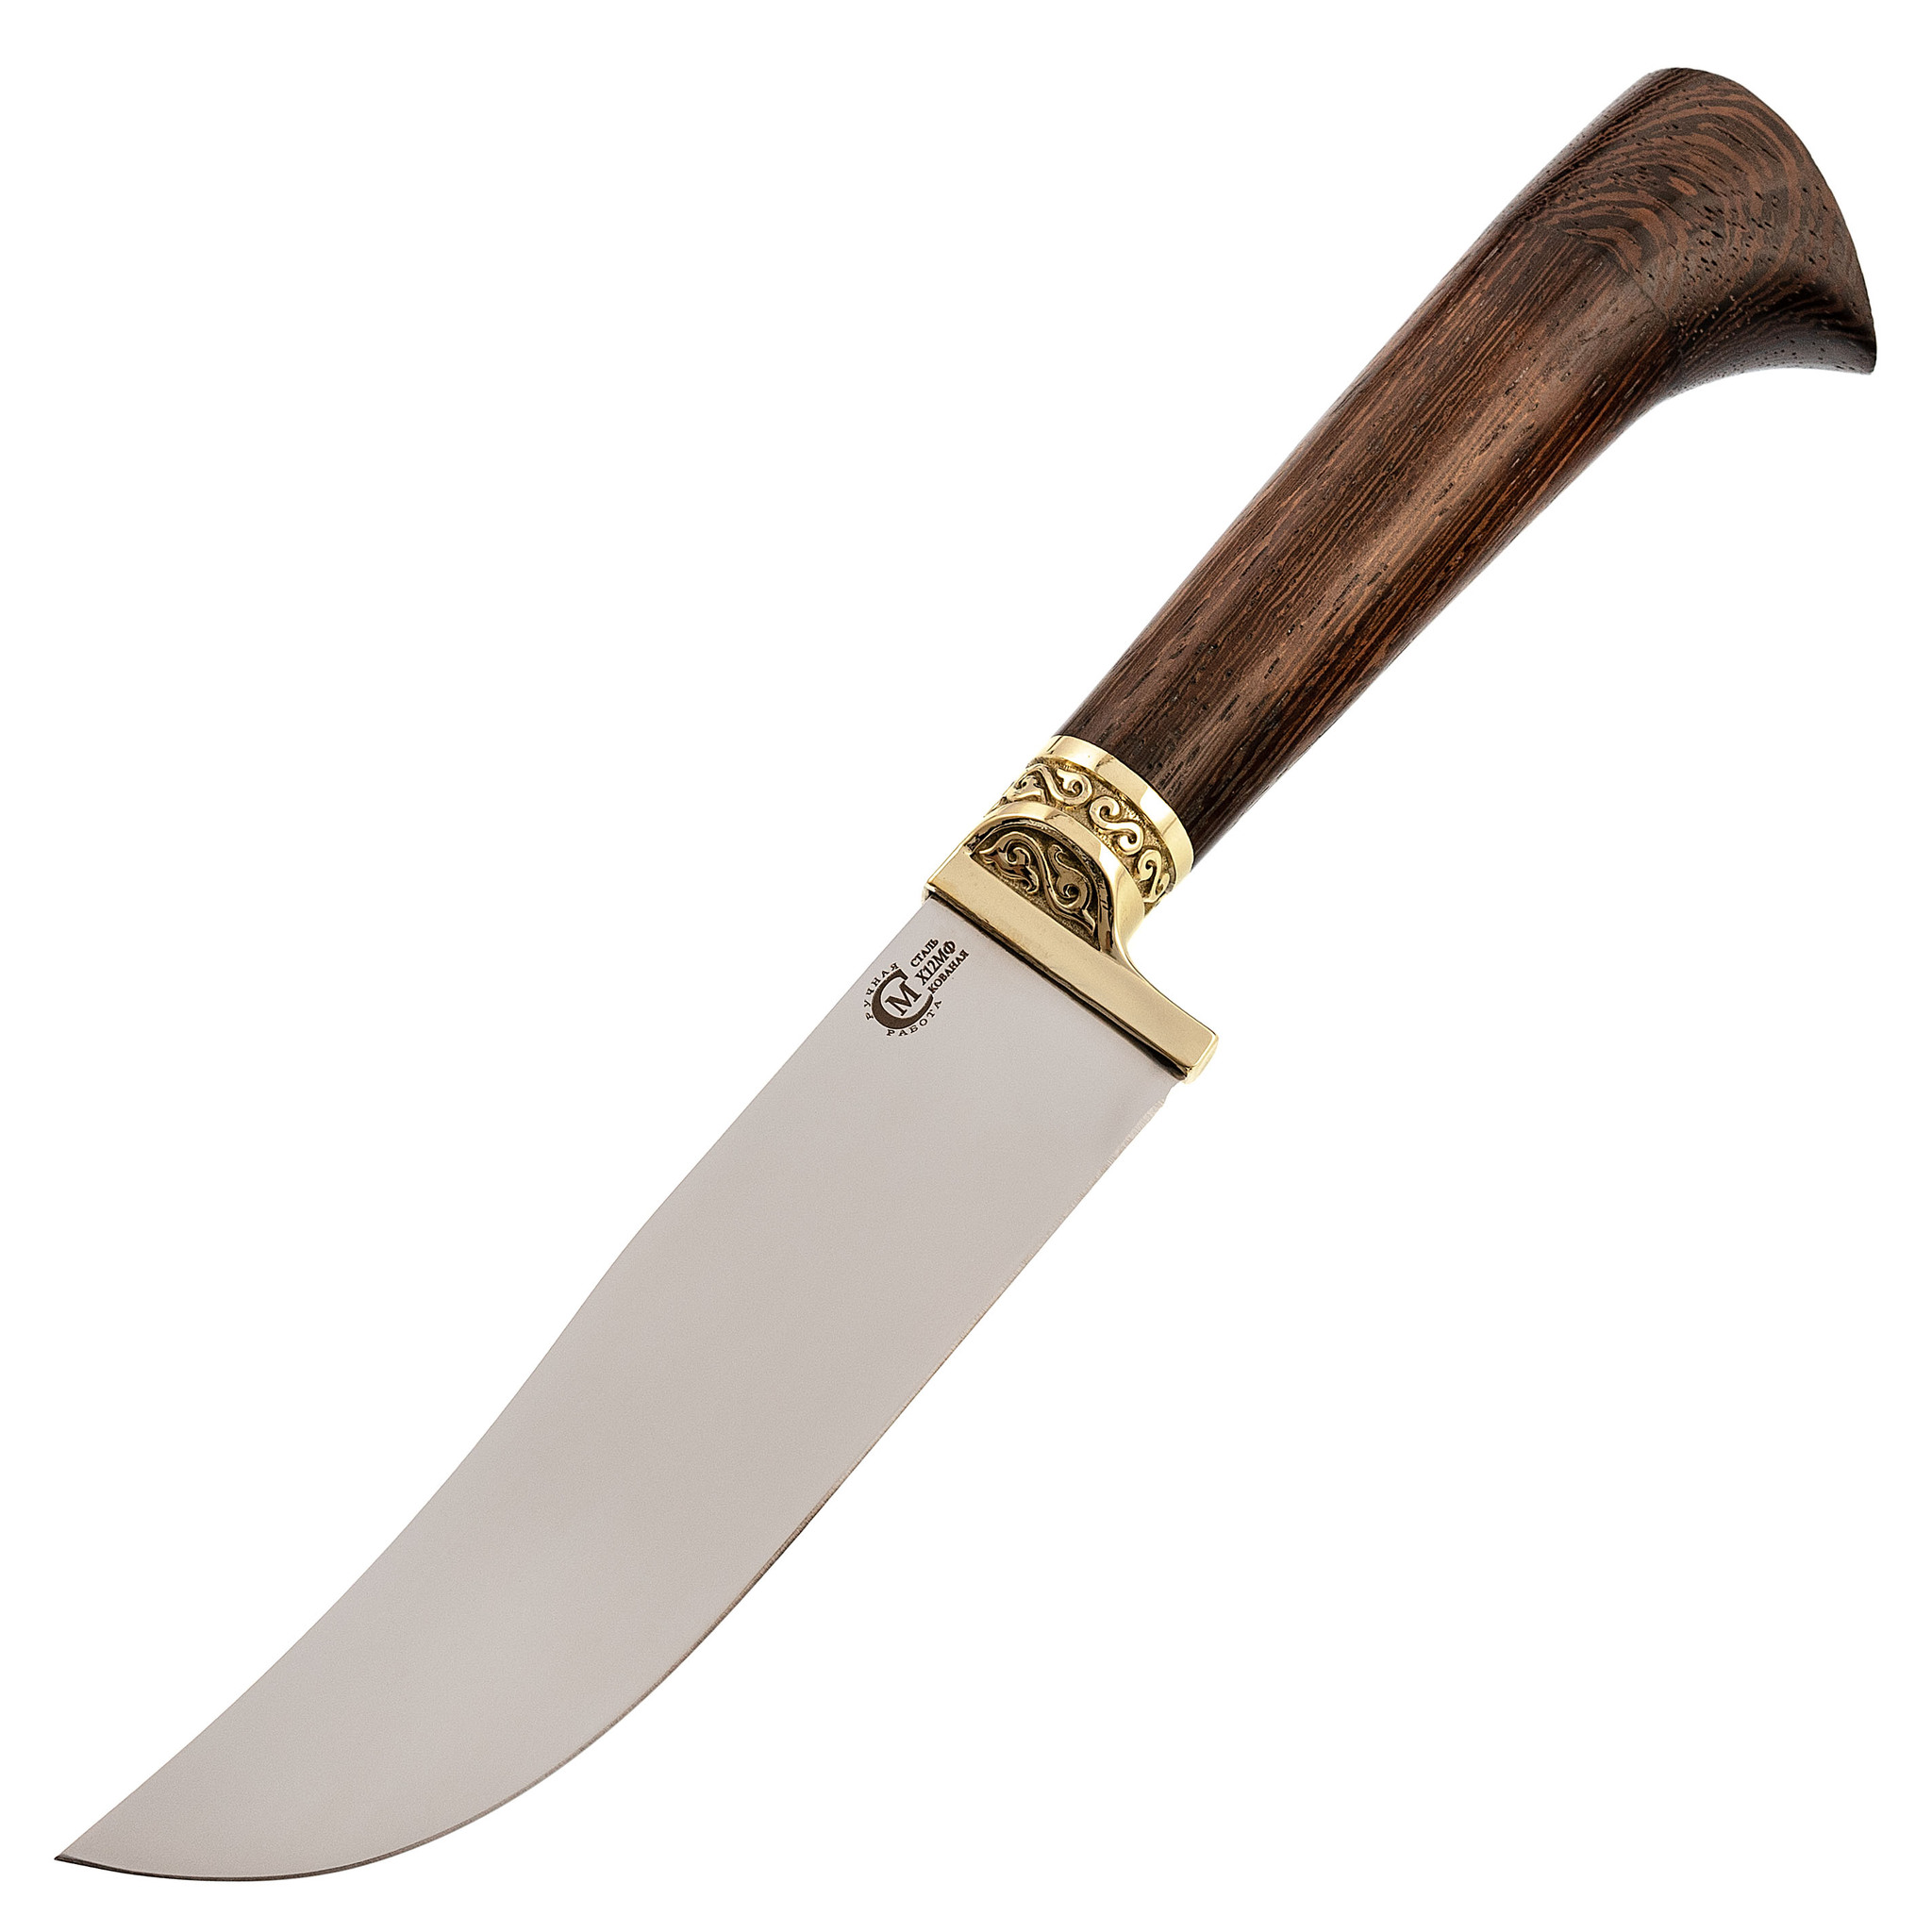 Нож Узбекский малый, сталь Х12МФ, рукоять венге, Кухонные ножи, Узбекские ножи Пчак